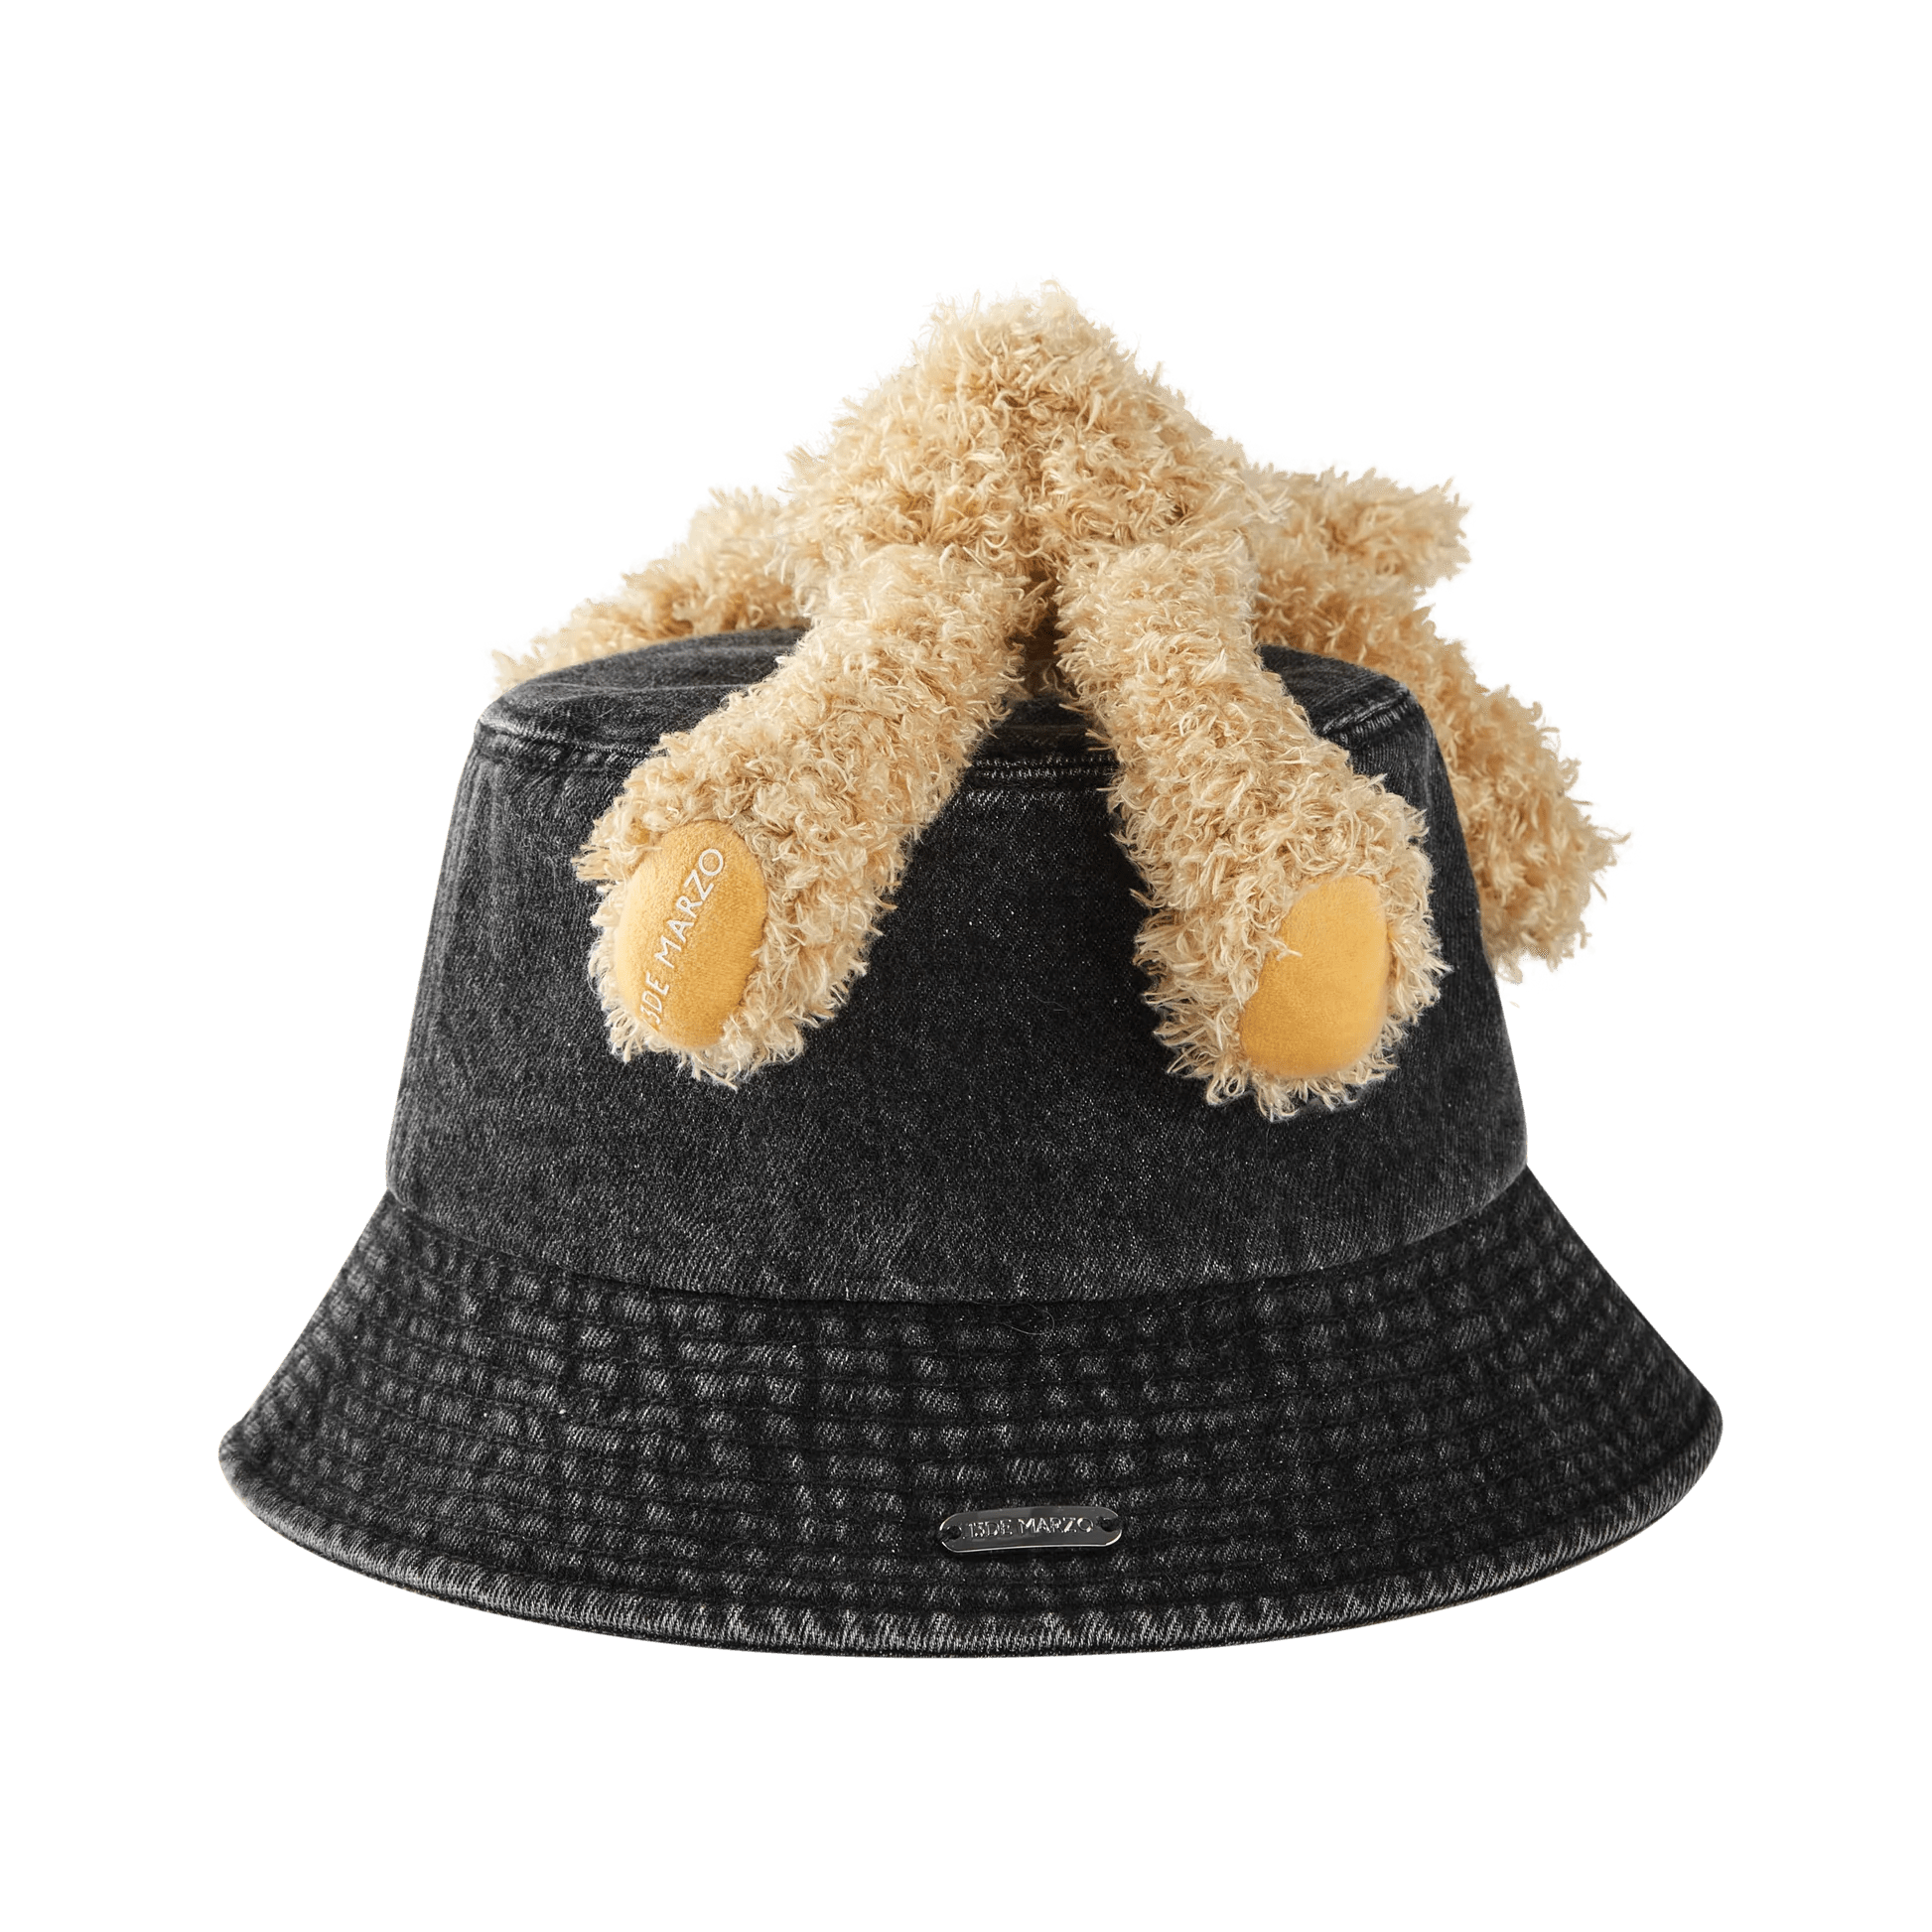 13DE MARZO Doozoo Washed Denim Bucket Hat Black | MADA IN CHINA